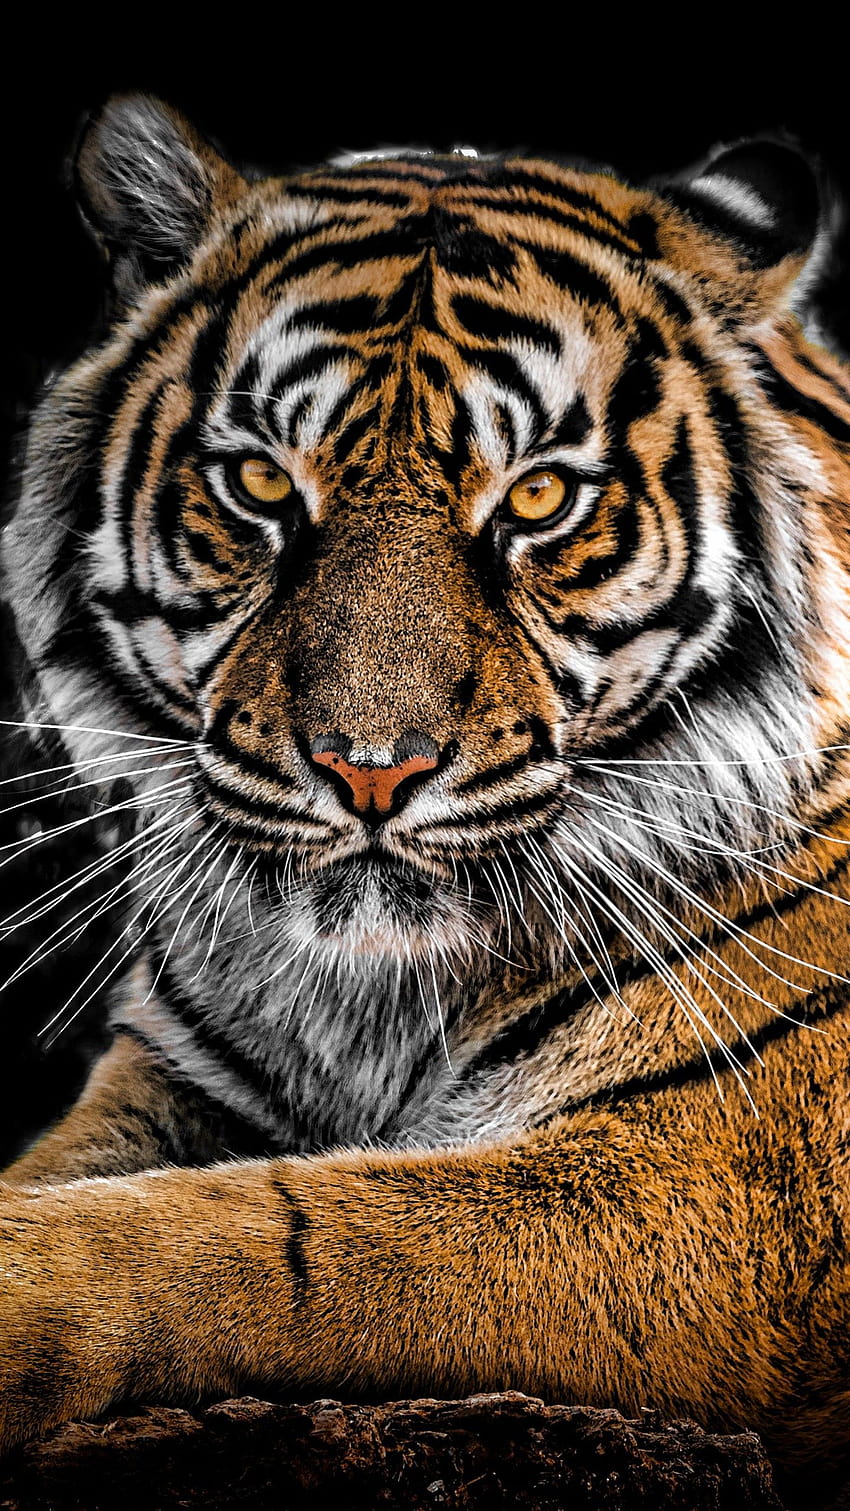 Tiger Portrait, tiger iphone HD phone wallpaper